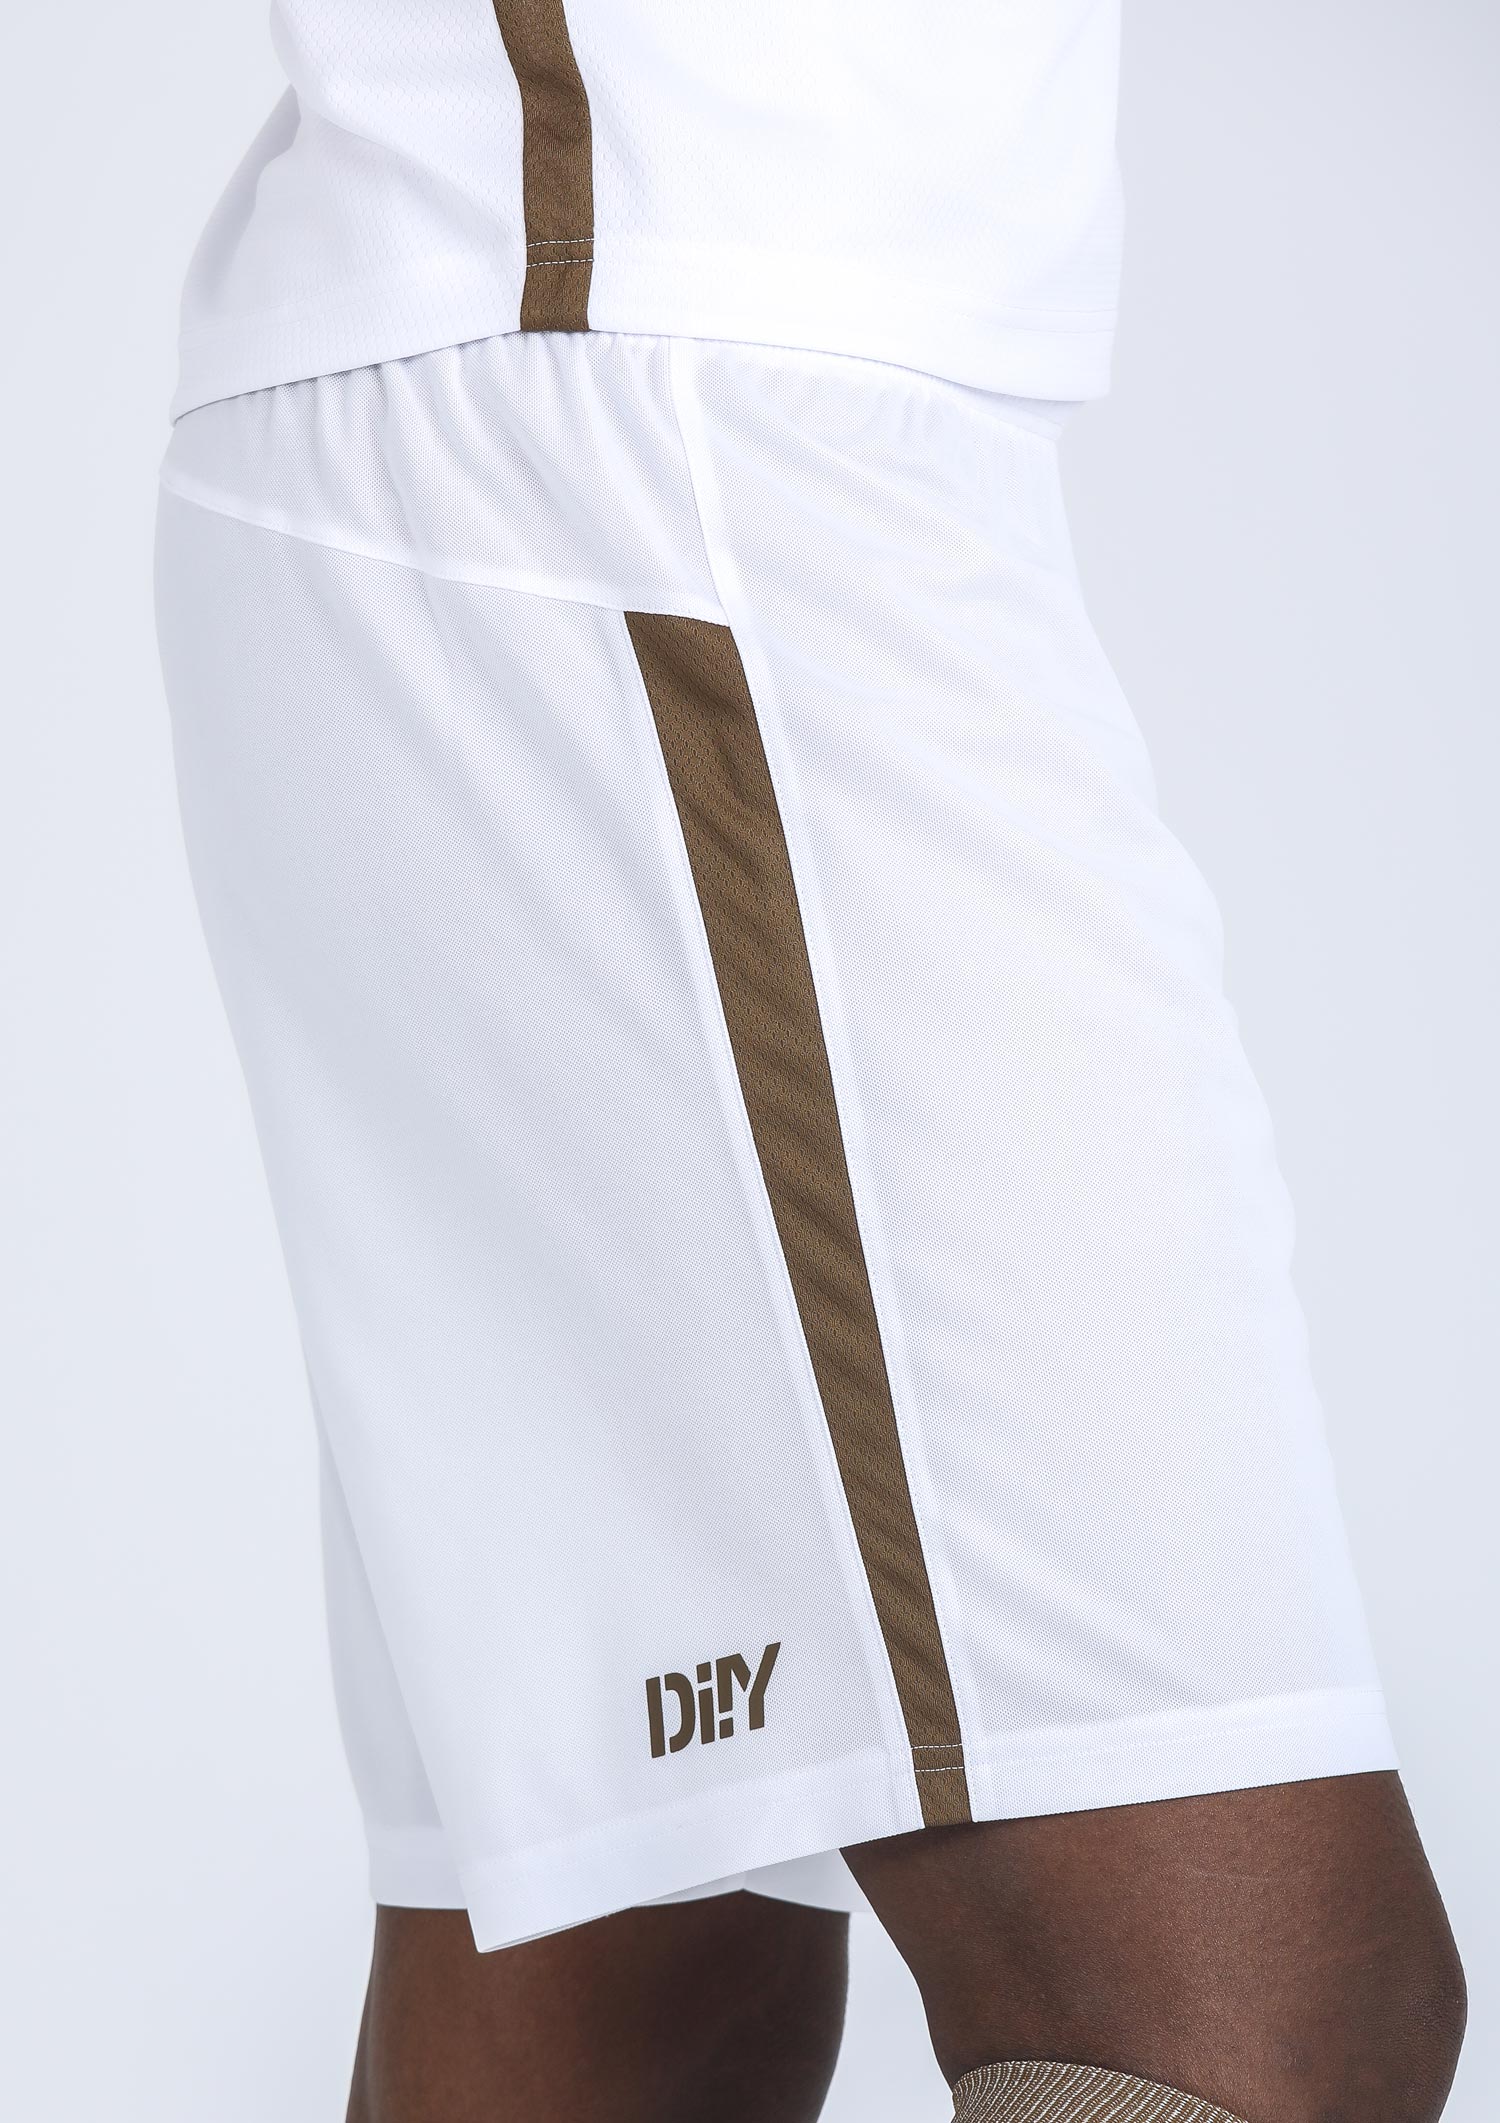 DIIY - Shorts Away 2022-23